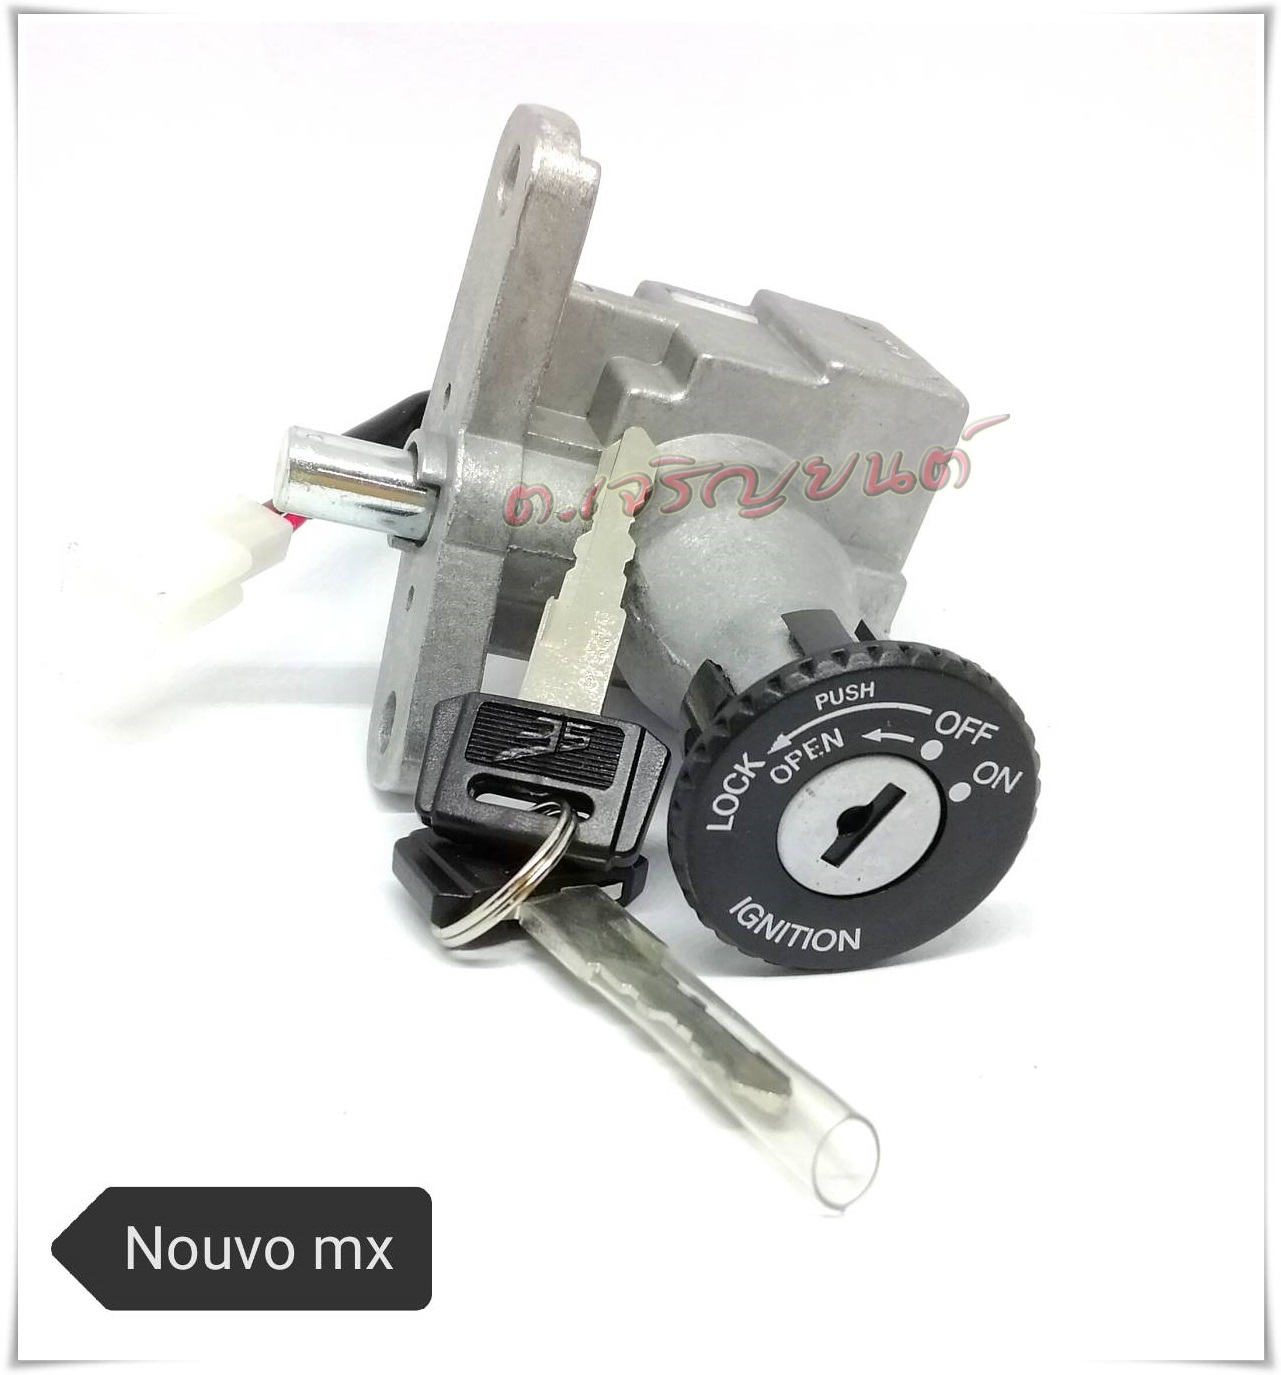 สวิทช์กุญแจ NOUVO MX เกรดOEMเทียบเท่าแท้ (นูโว เอ็มเอ๊ก)